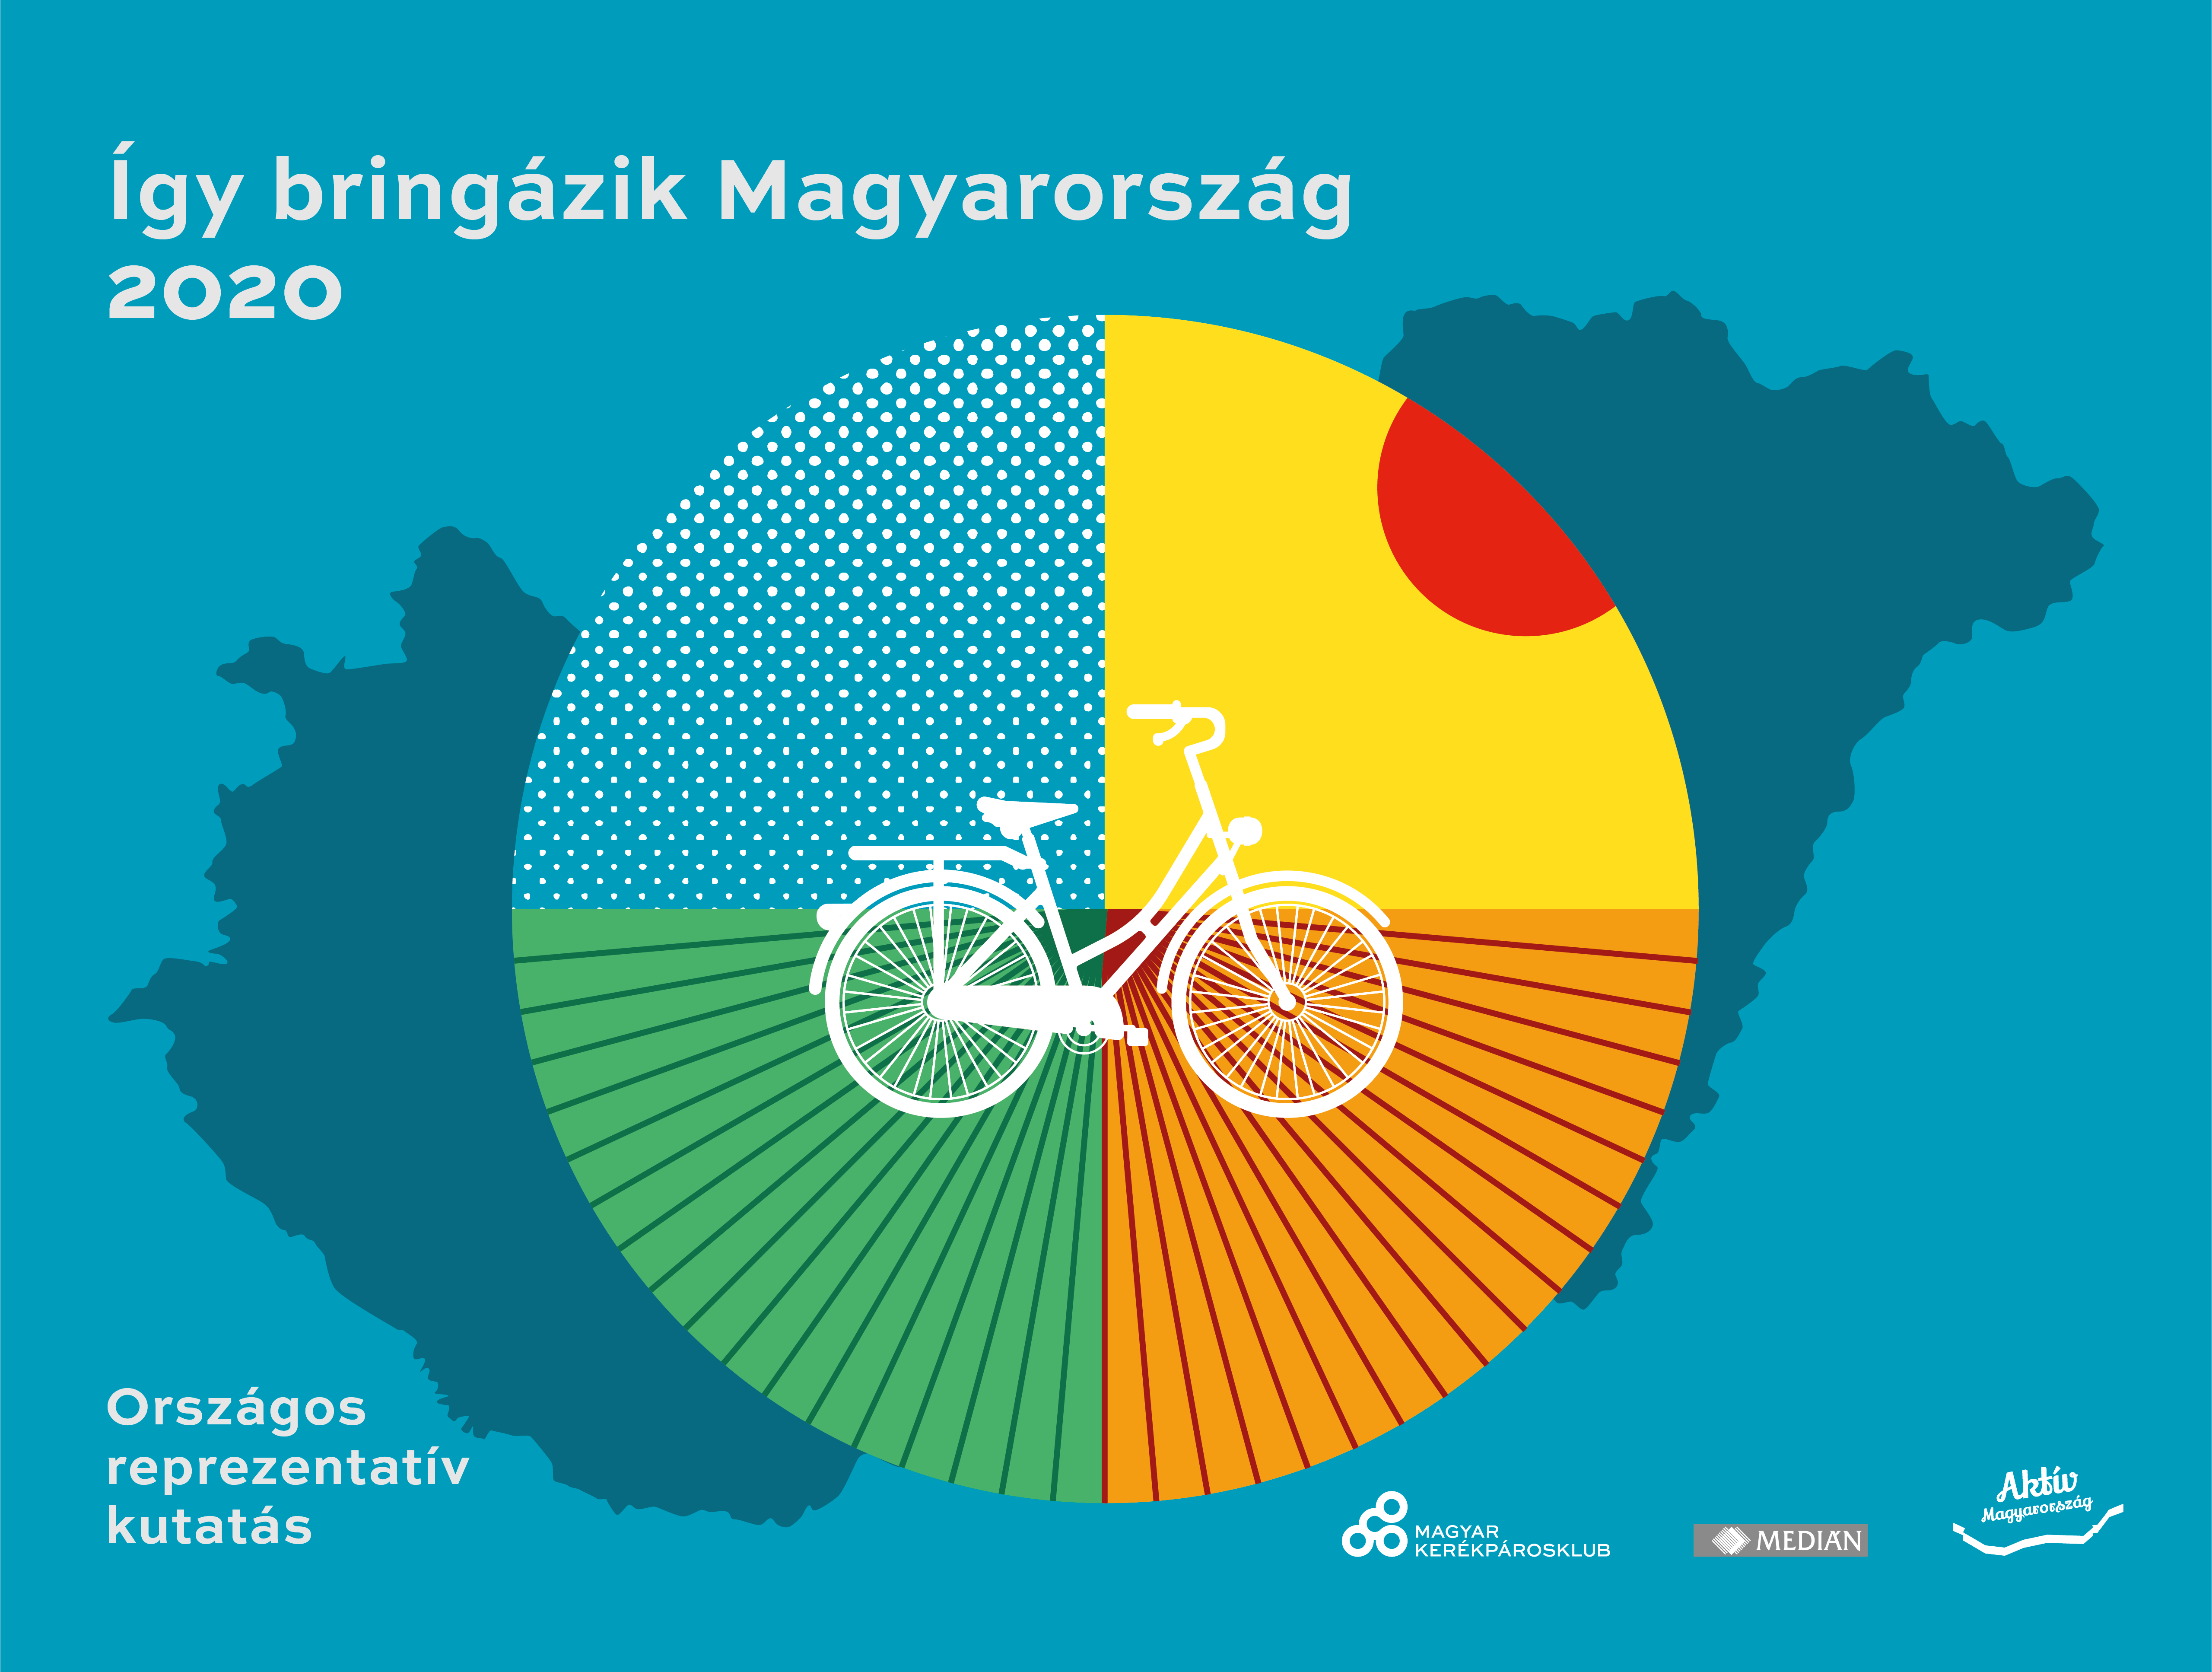 Ugyanannyi kormánypárti és ellenzéki kerékpározik, sokan bicikliznek a járvány miatt – országos kutatás 2020